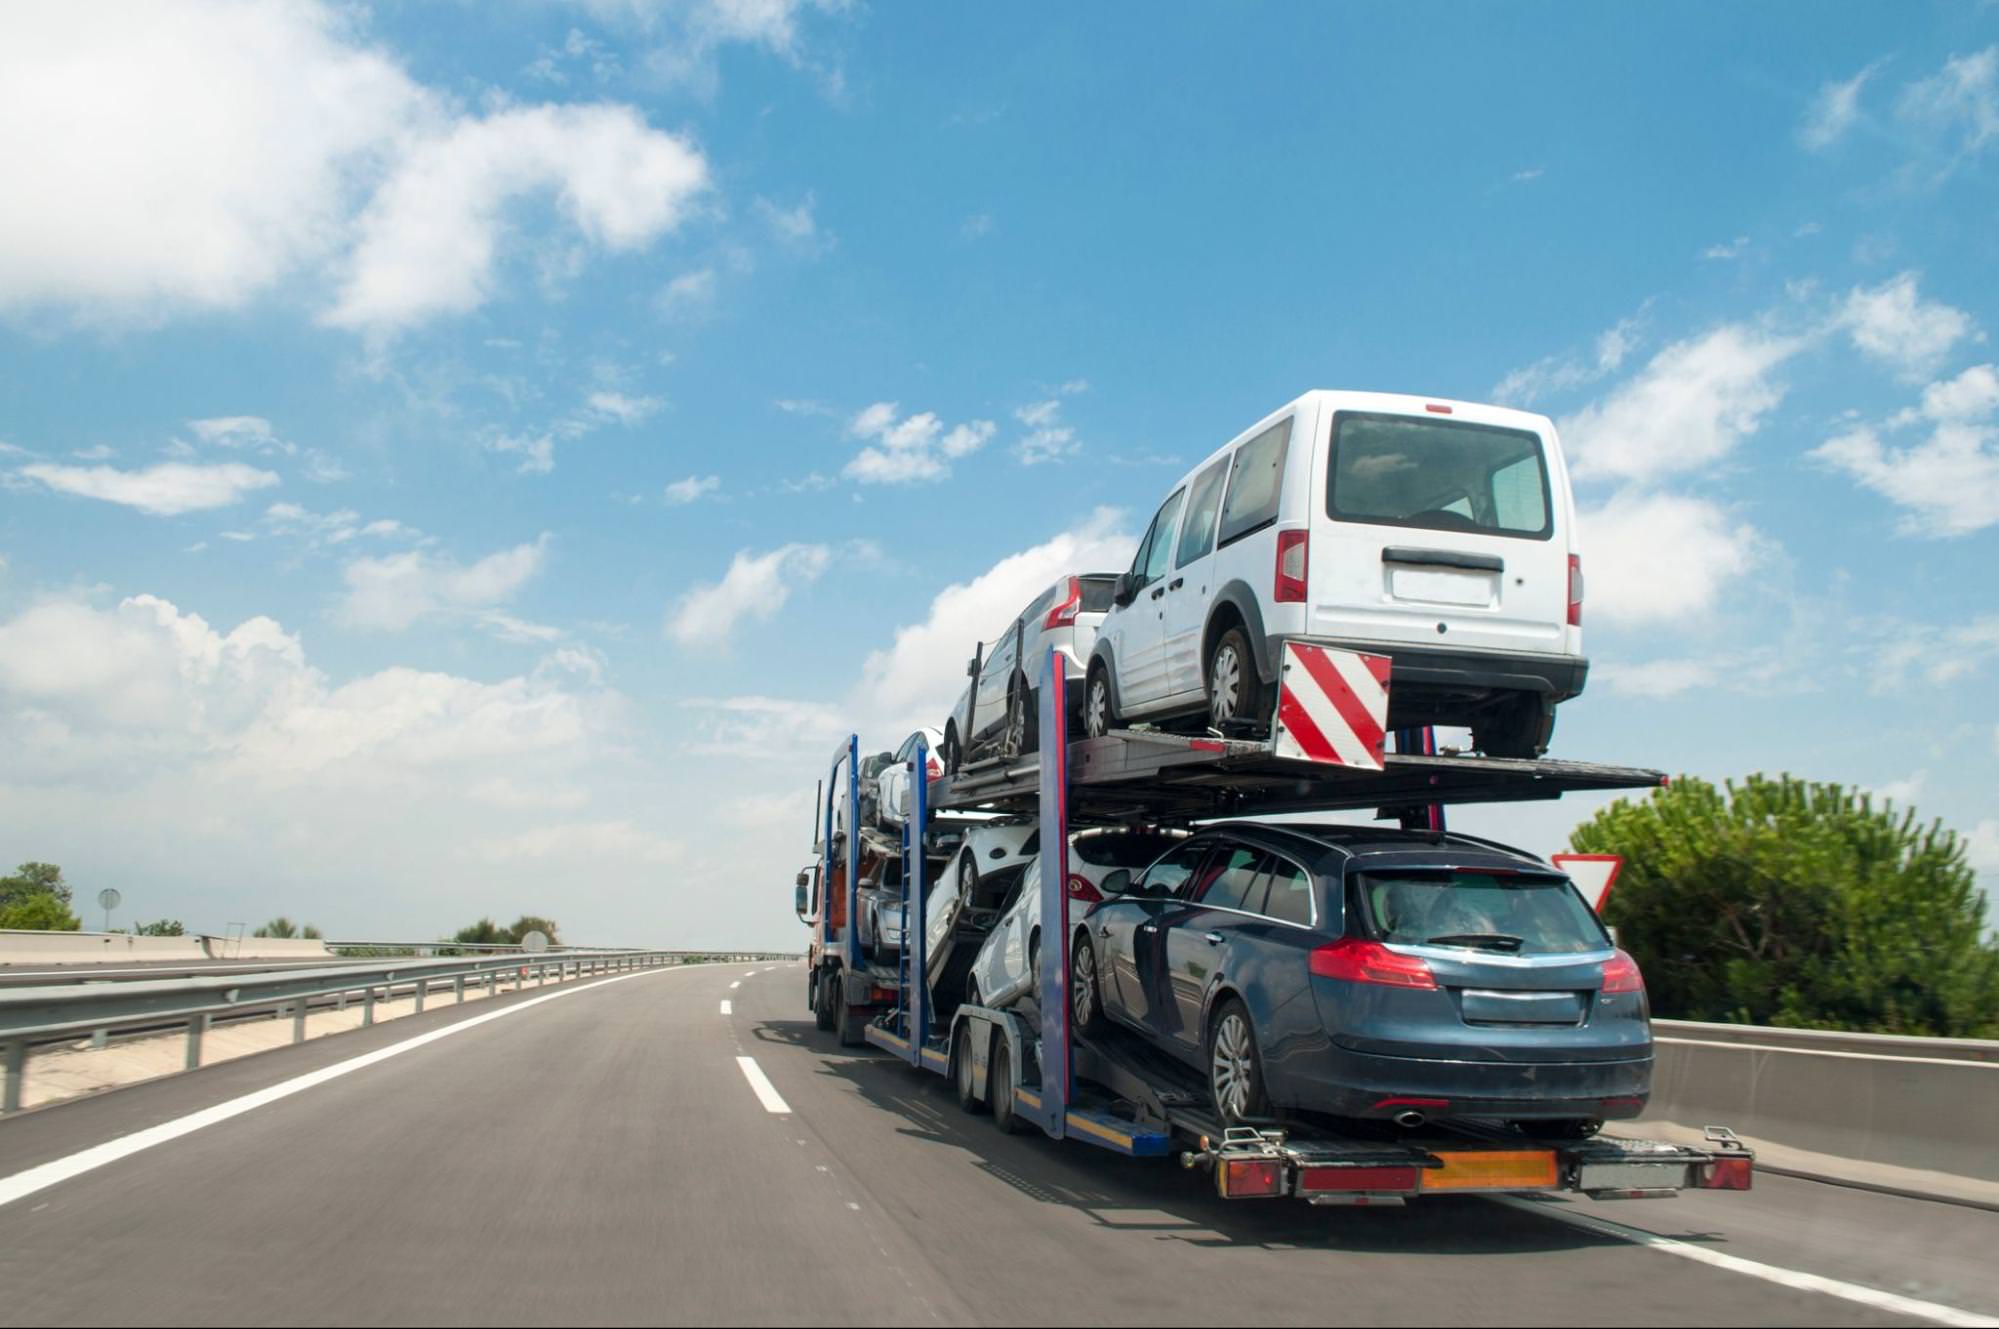 Автовоз, перевозящий несколько транспортных средств по шоссе, представляющий собой доставку автомобилей из Бельгии в Португалию.